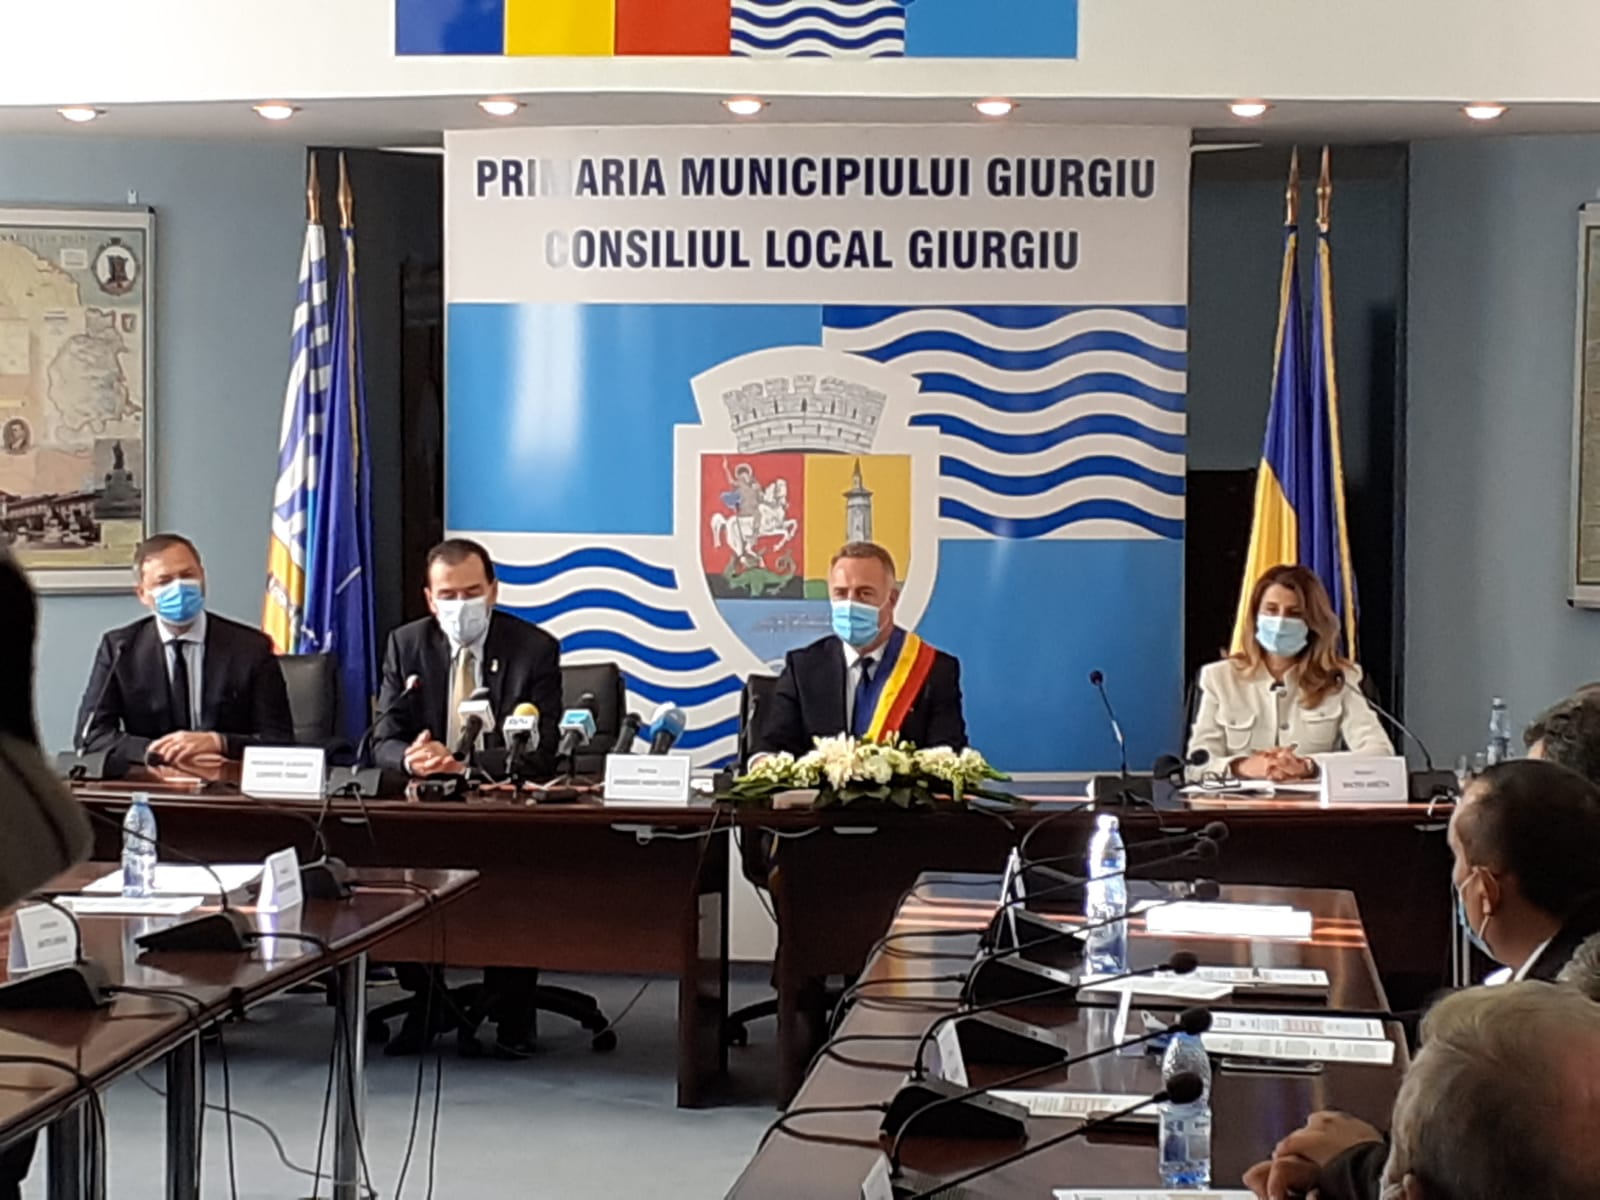 Prima declaraţie de presă a primarului municipiului Giurgiu, Adrian Anghelescu după depunerea jurământului